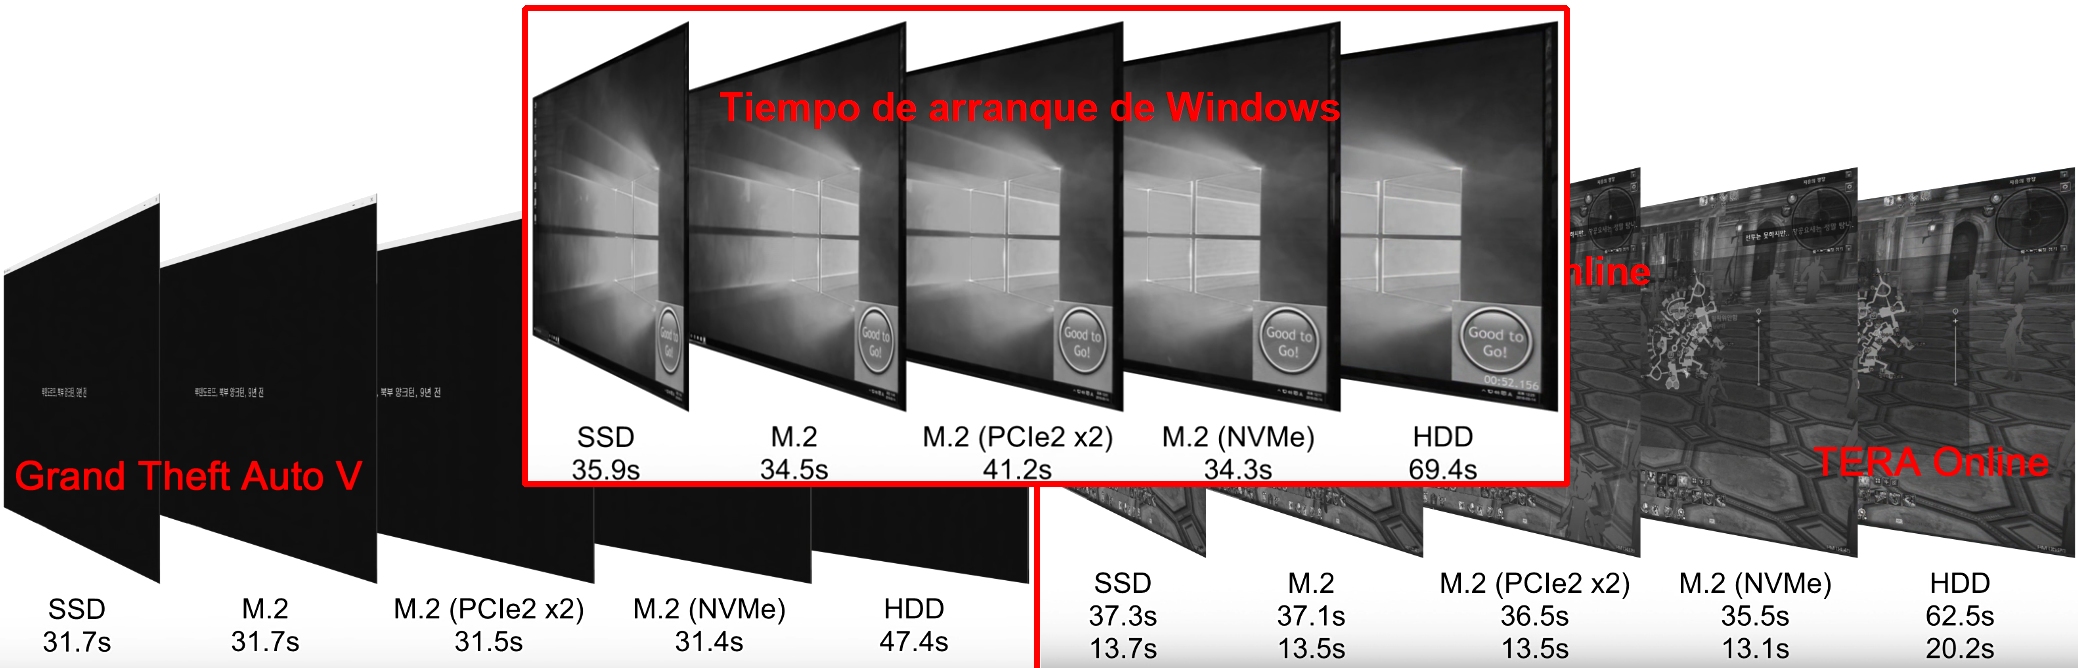 SSD vs M.2-NVMe/PCIe - Diferencias de rendimiento